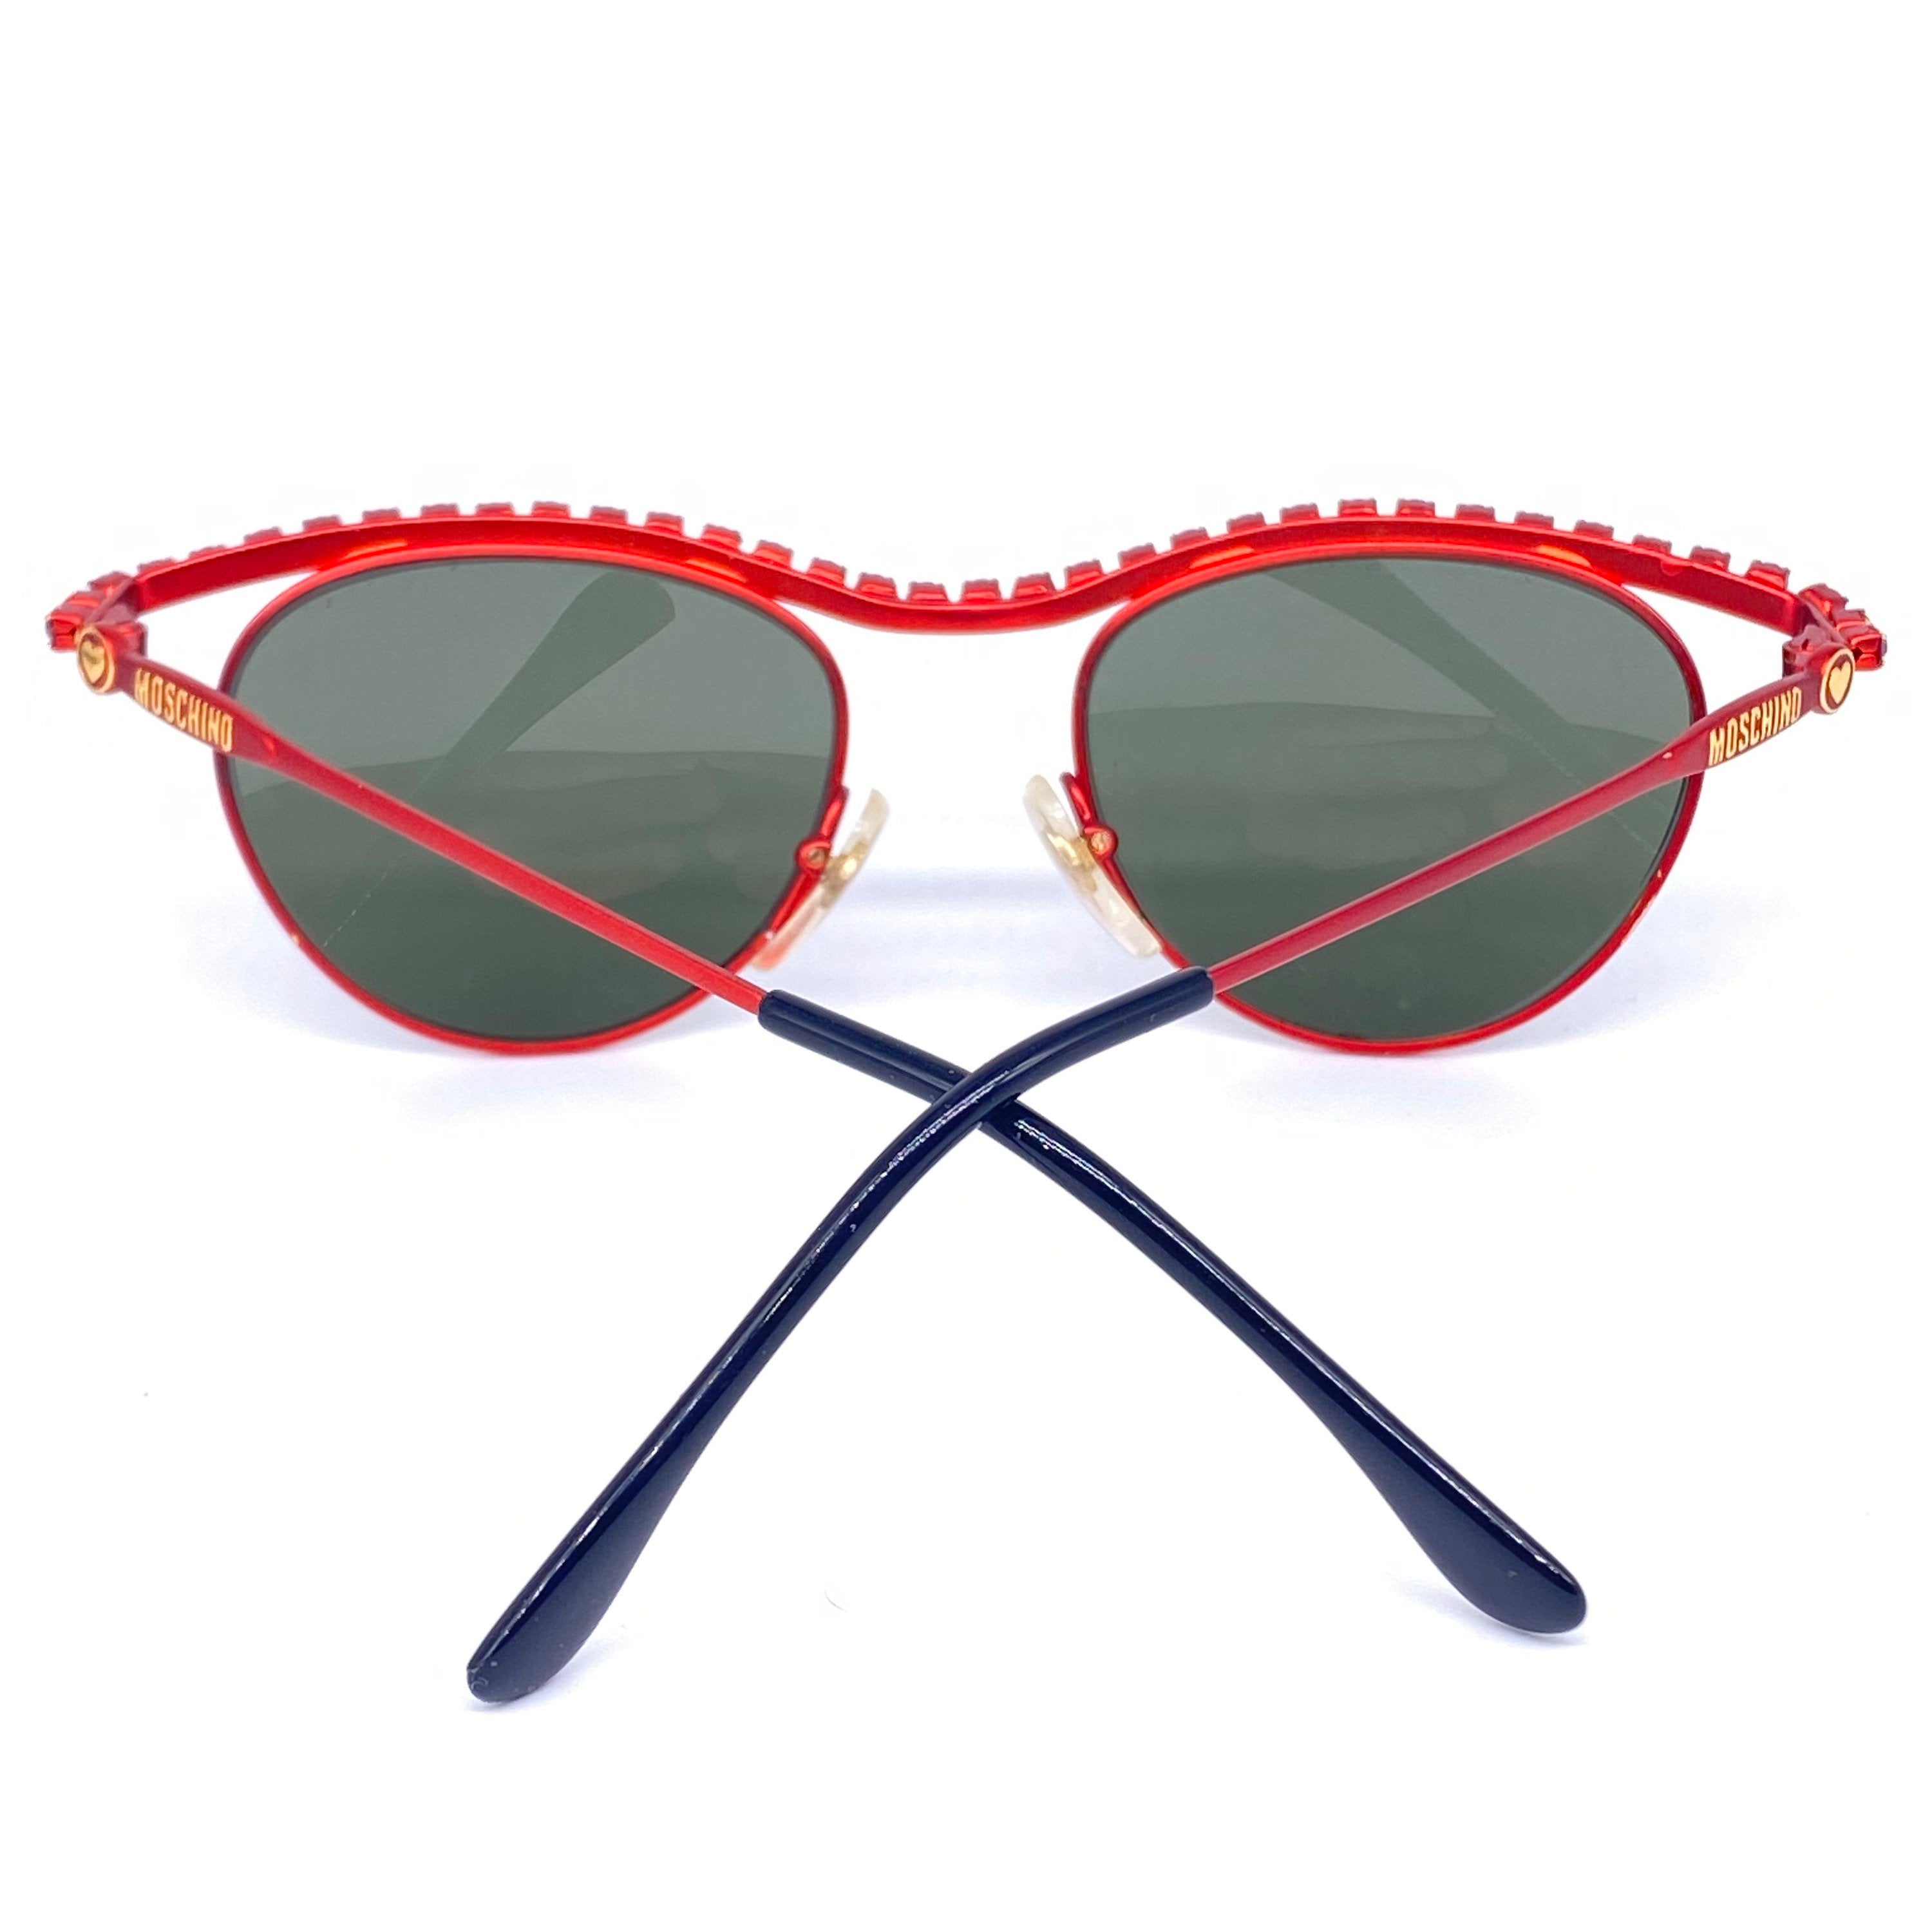 New Hand Made Persol 3226-S Red Tortoise Plastic Frame Gray Lens Sunglasses  | eBay